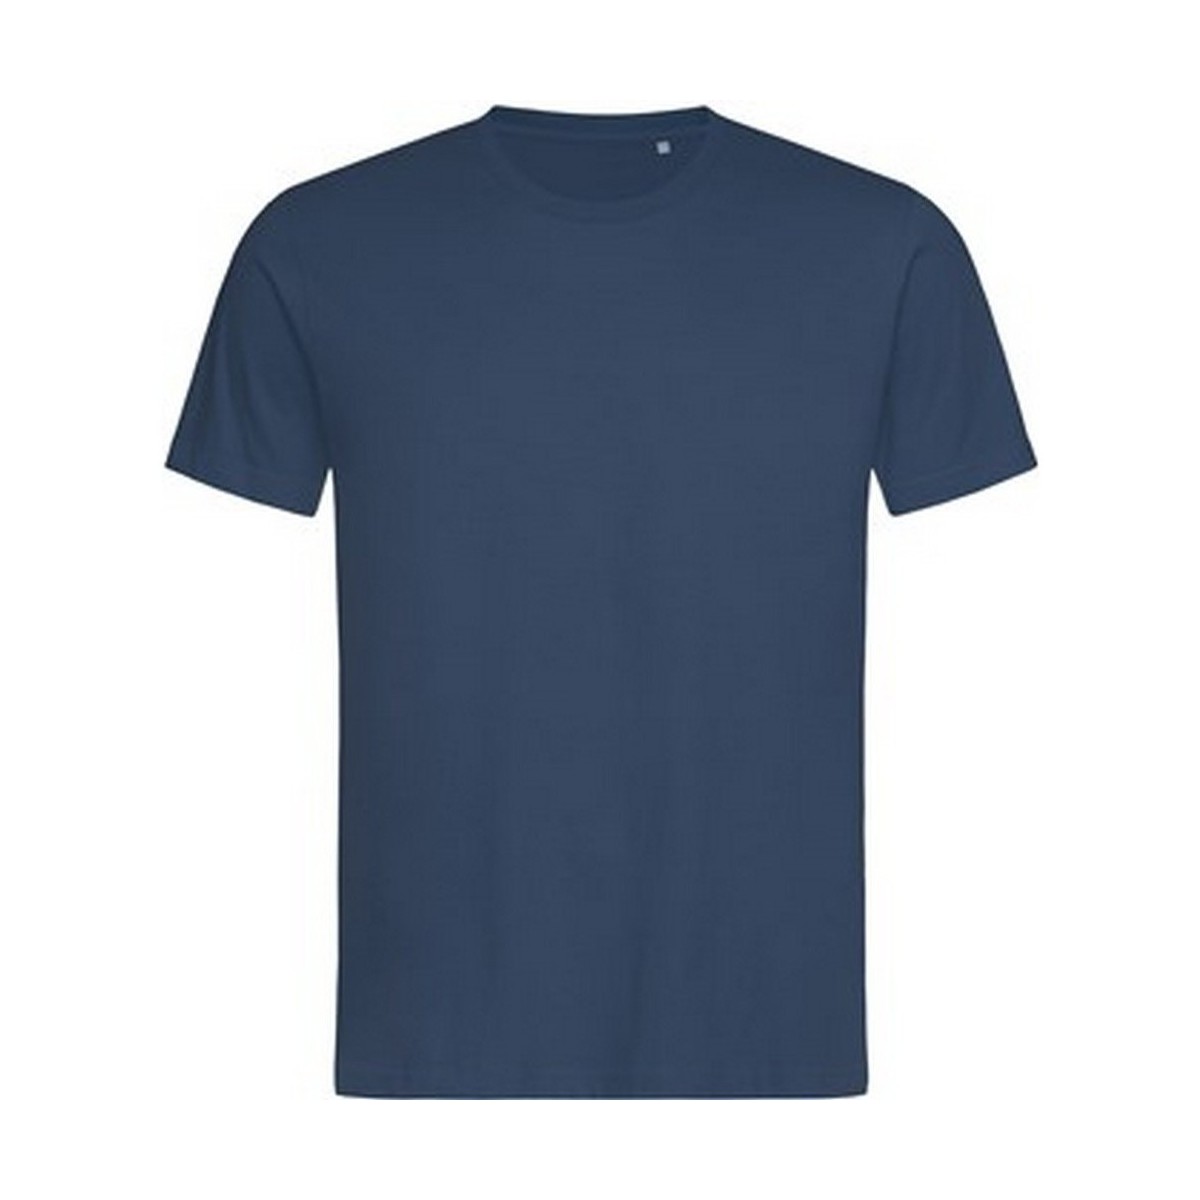 Vêtements Homme T-shirts manches longues Stedman Lux Bleu